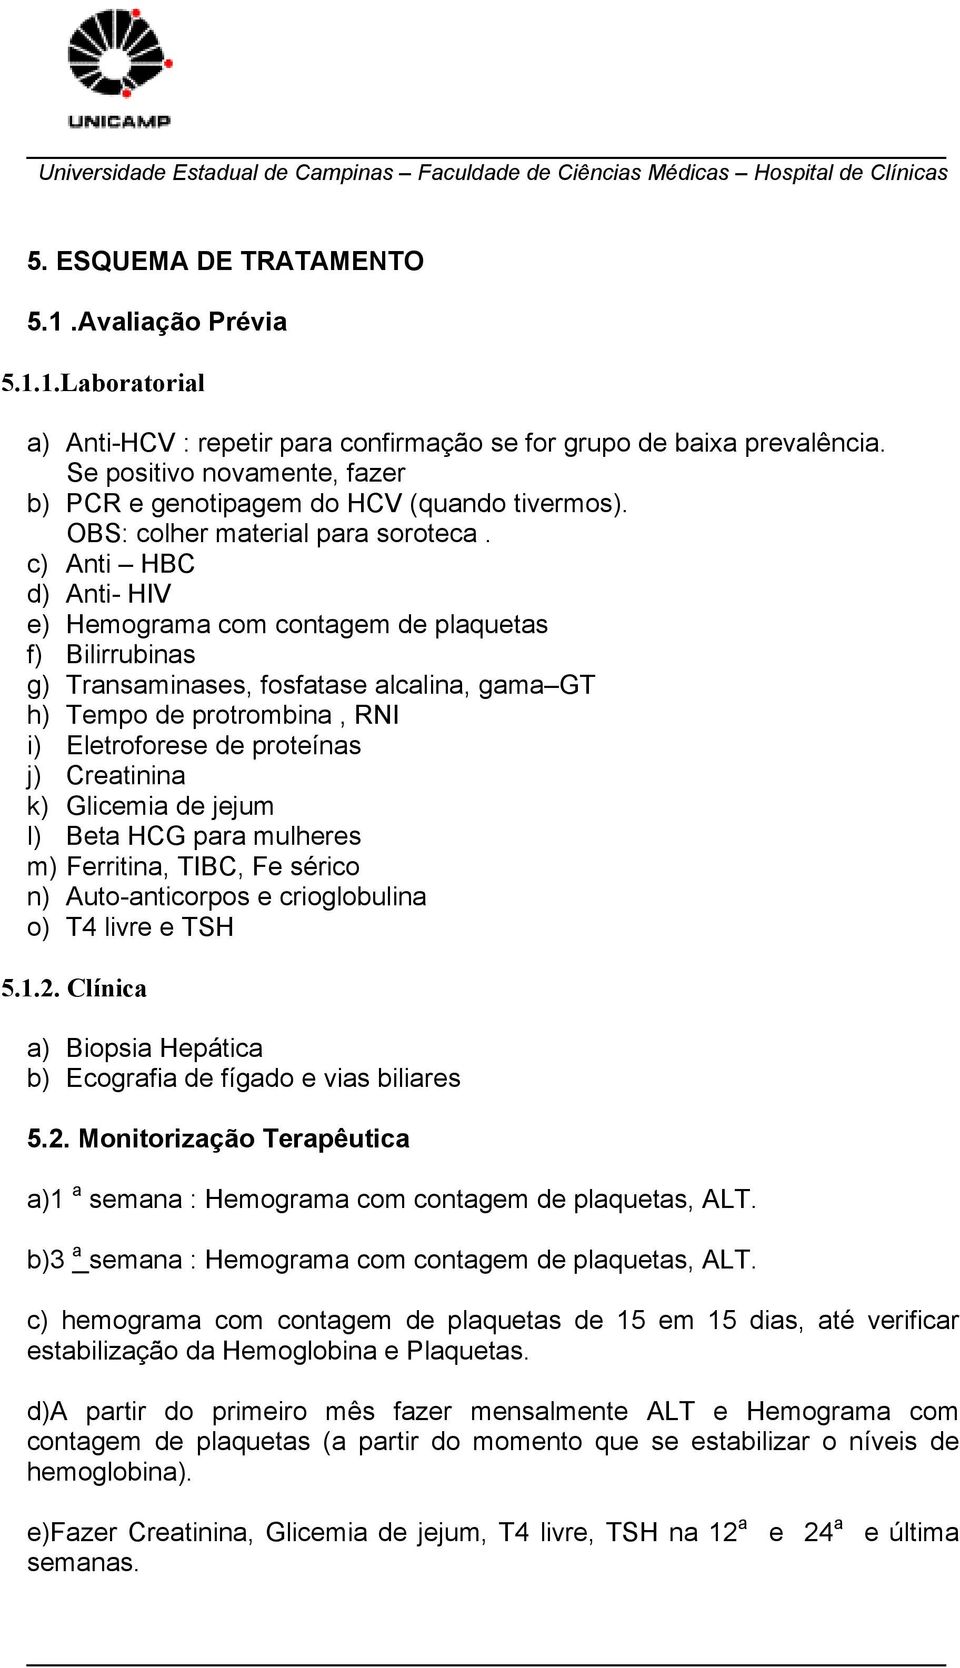 c) Anti HBC d) Anti- HIV e) Hemograma com contagem de plaquetas f) Bilirrubinas g) Transaminases, fosfatase alcalina, gama GT h) Tempo de protrombina, RNI i) Eletroforese de proteínas j) Creatinina